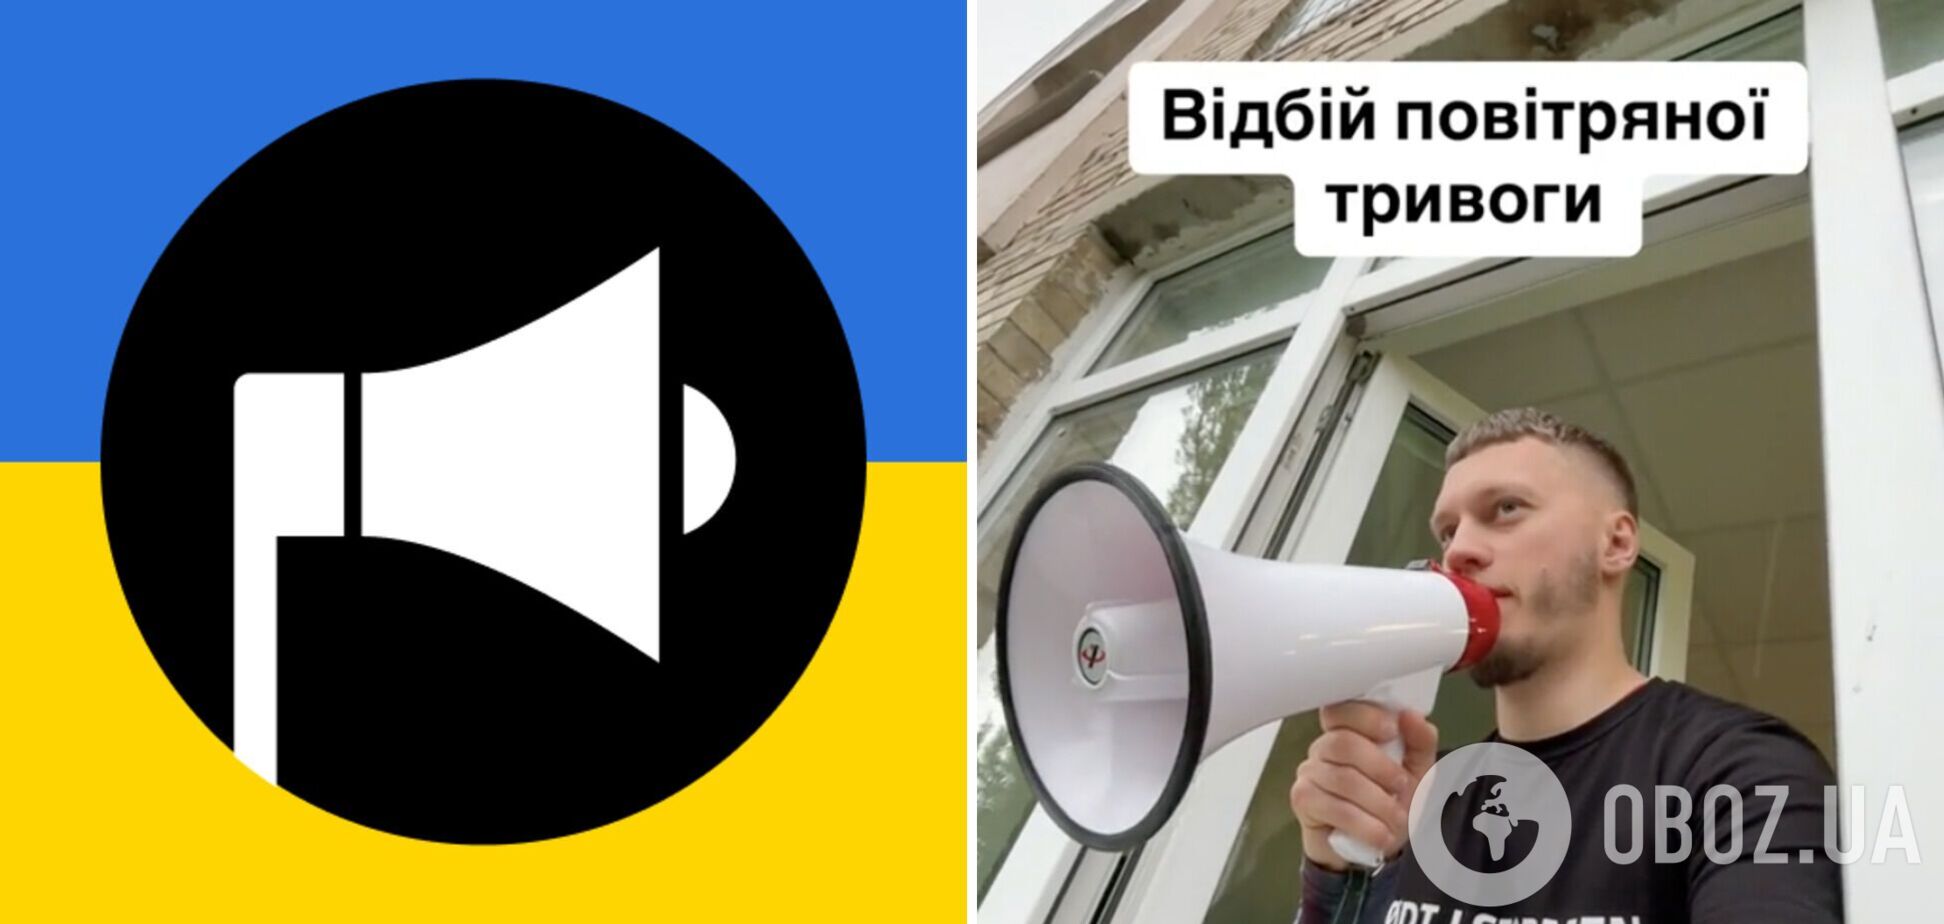 'Чого такі сумні?' 25-річний вчитель з Києва оригінально сповістив школярів про відбій повітряної тривоги і захопив мережу